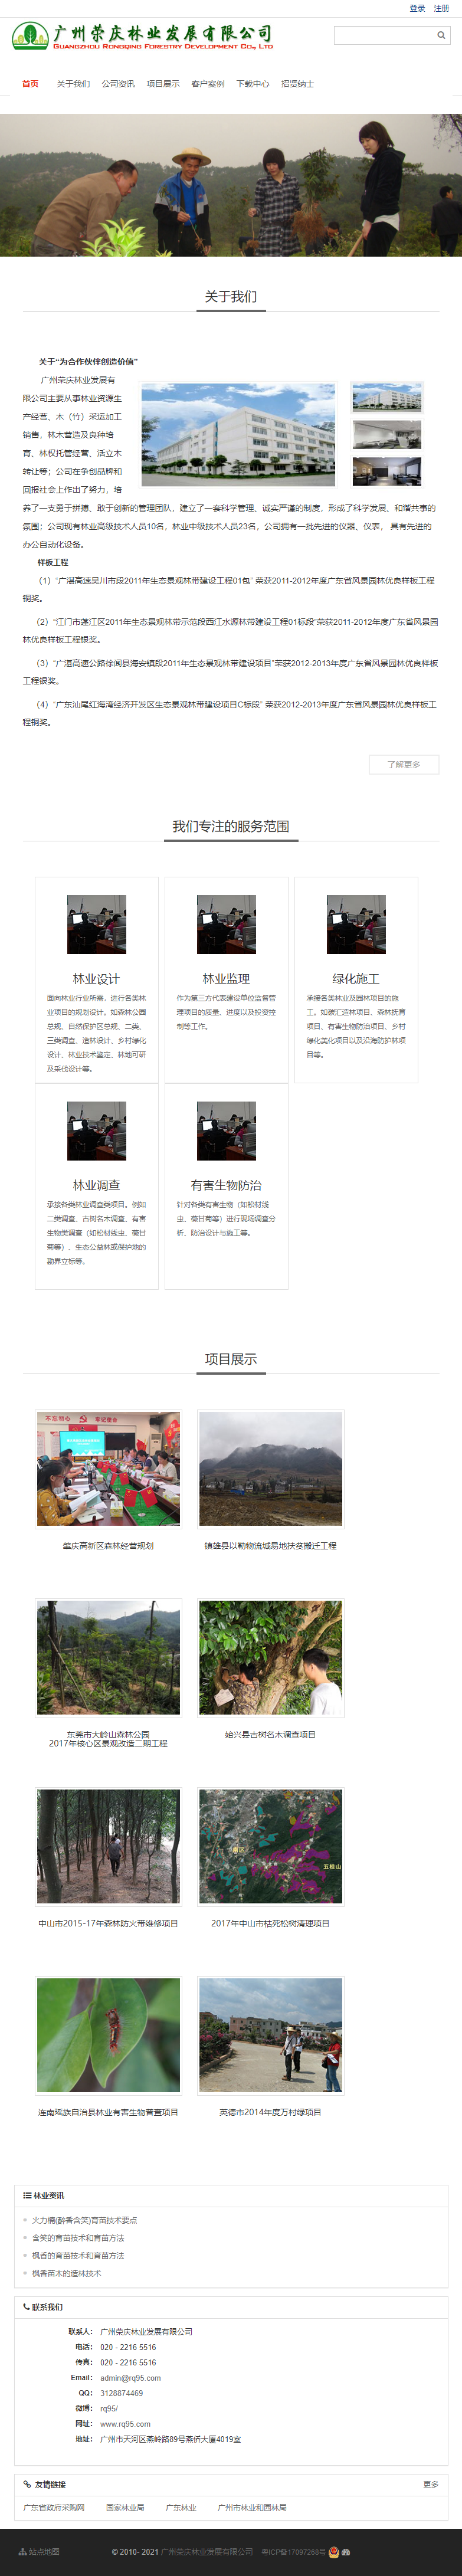 广州荣庆林业发展有限公司网站案例